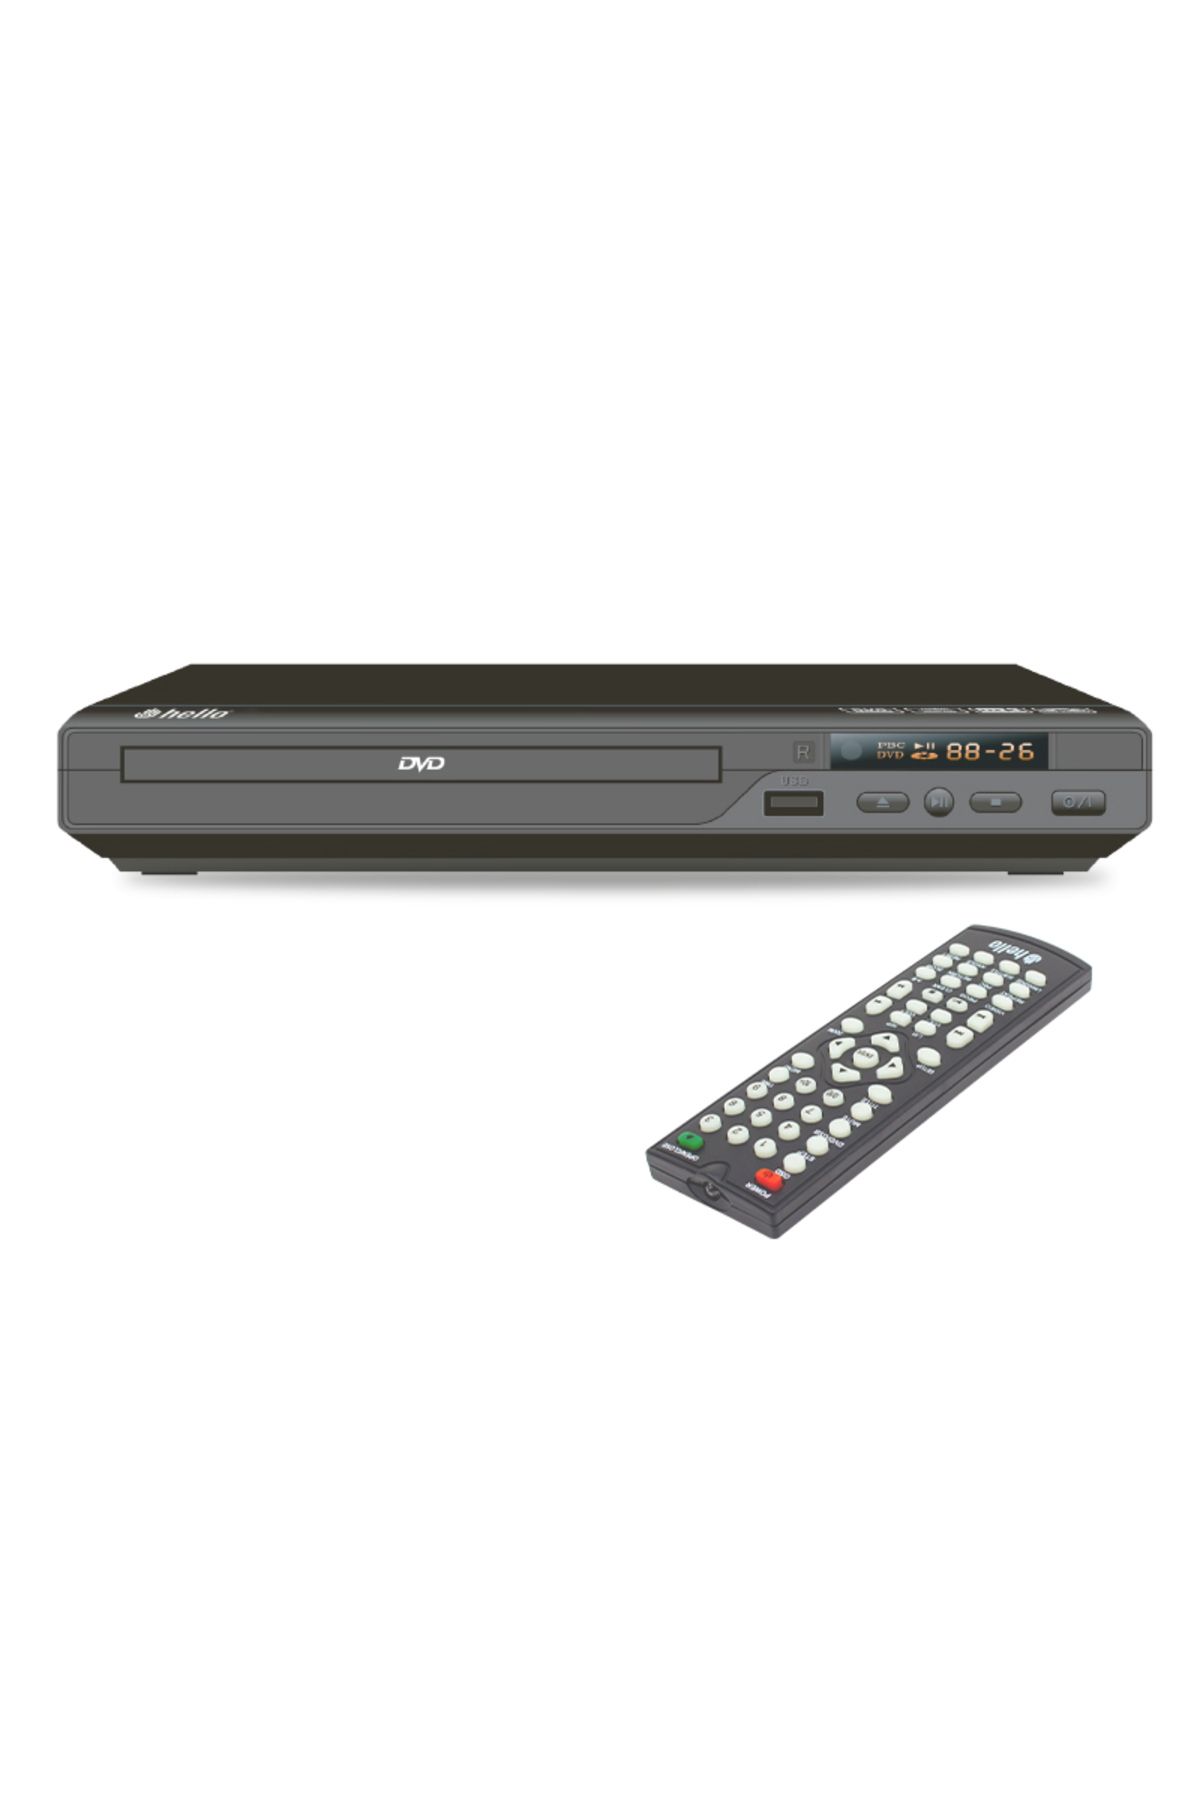 Trade Jam HELLO HL-5483 USB-HDMI DVD/DIVX KUMANDALI HD DVD PLAYER (4396)